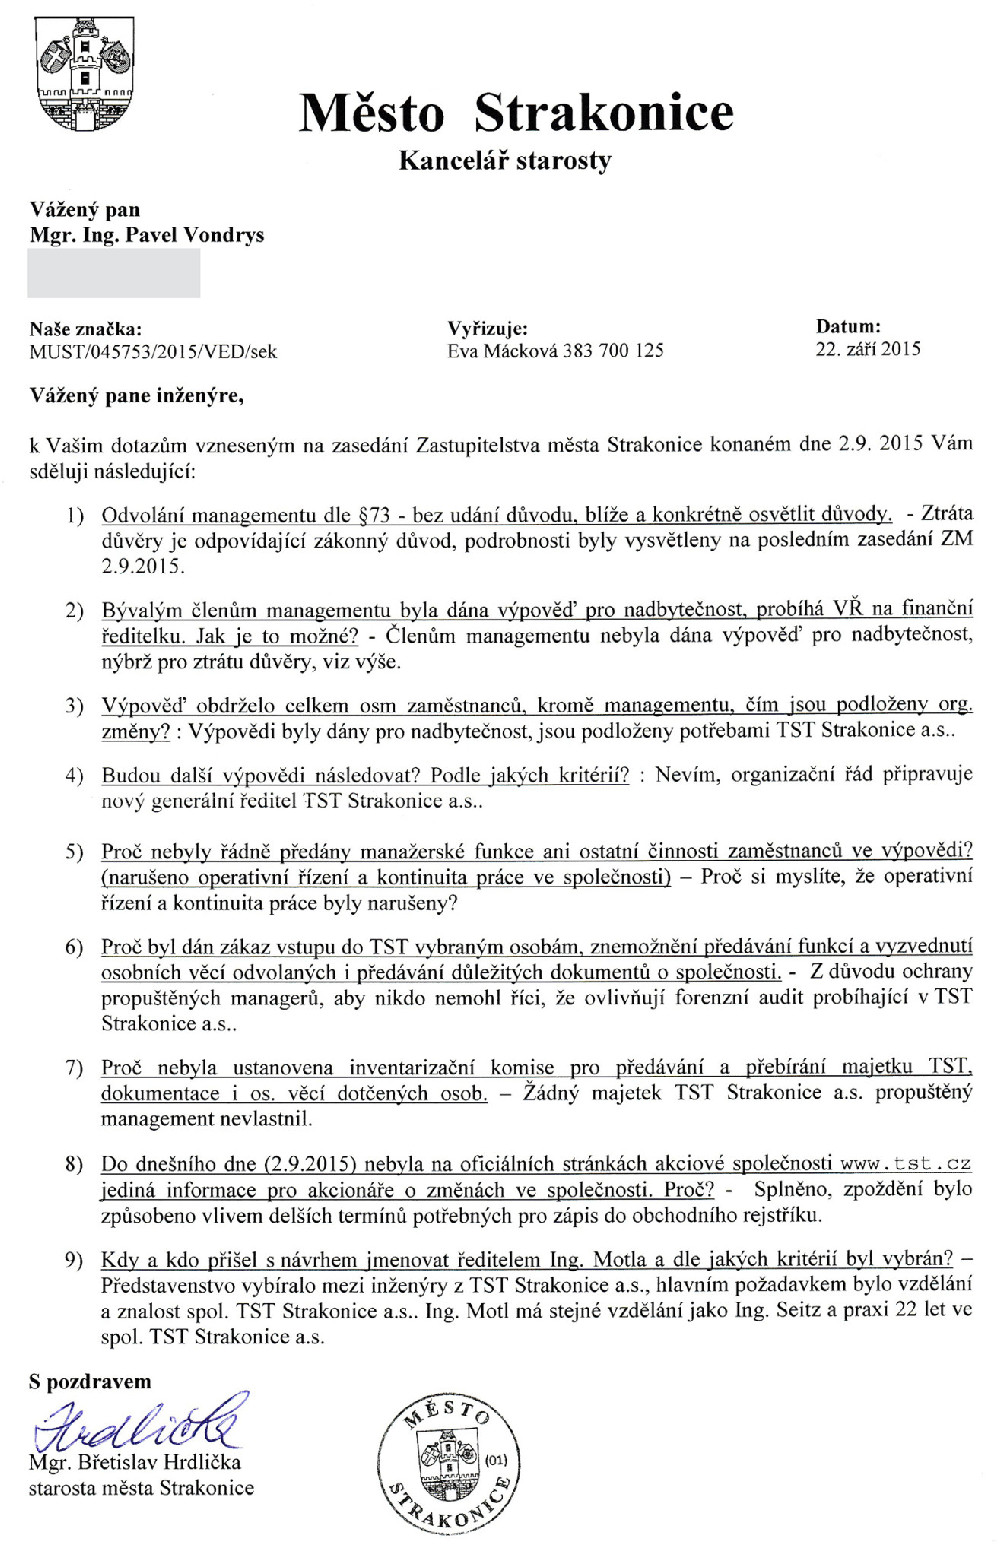 Dopis od města Strakonice, starosty Břetislava Hrdličky z 22.9.2015 Pavlu Vondrysovi